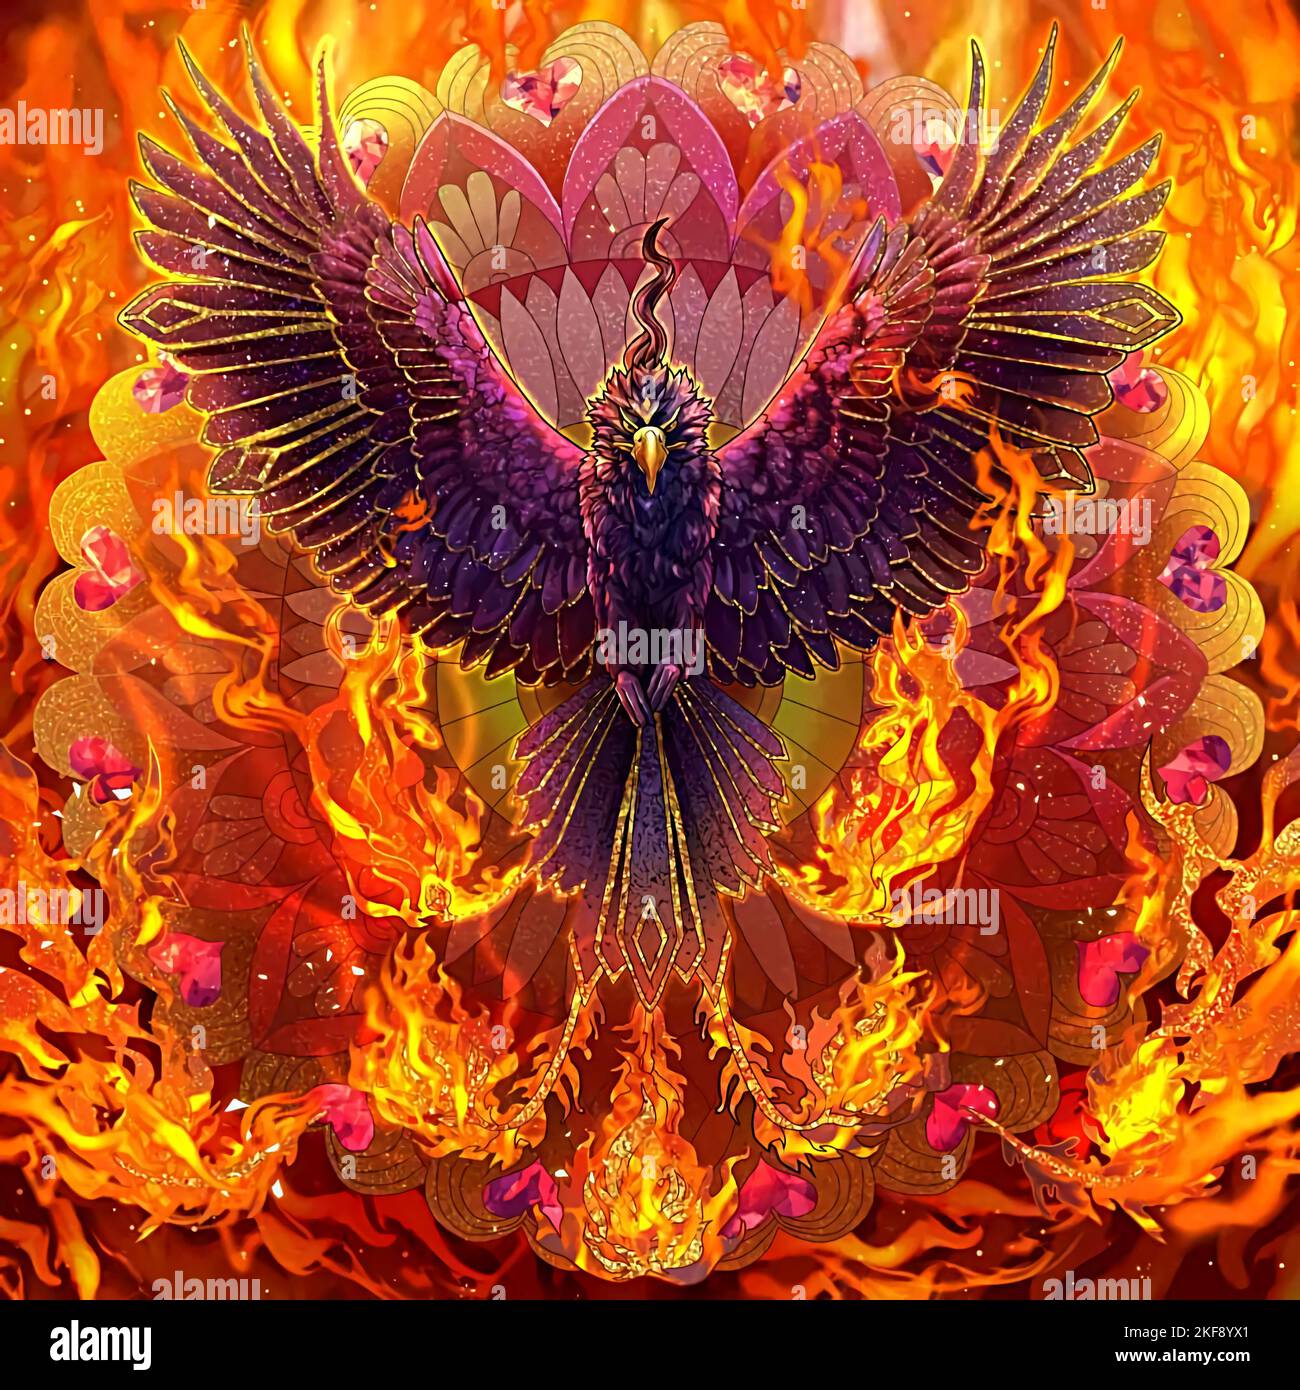 illustration d'un phoenix et d'un incendie Banque D'Images